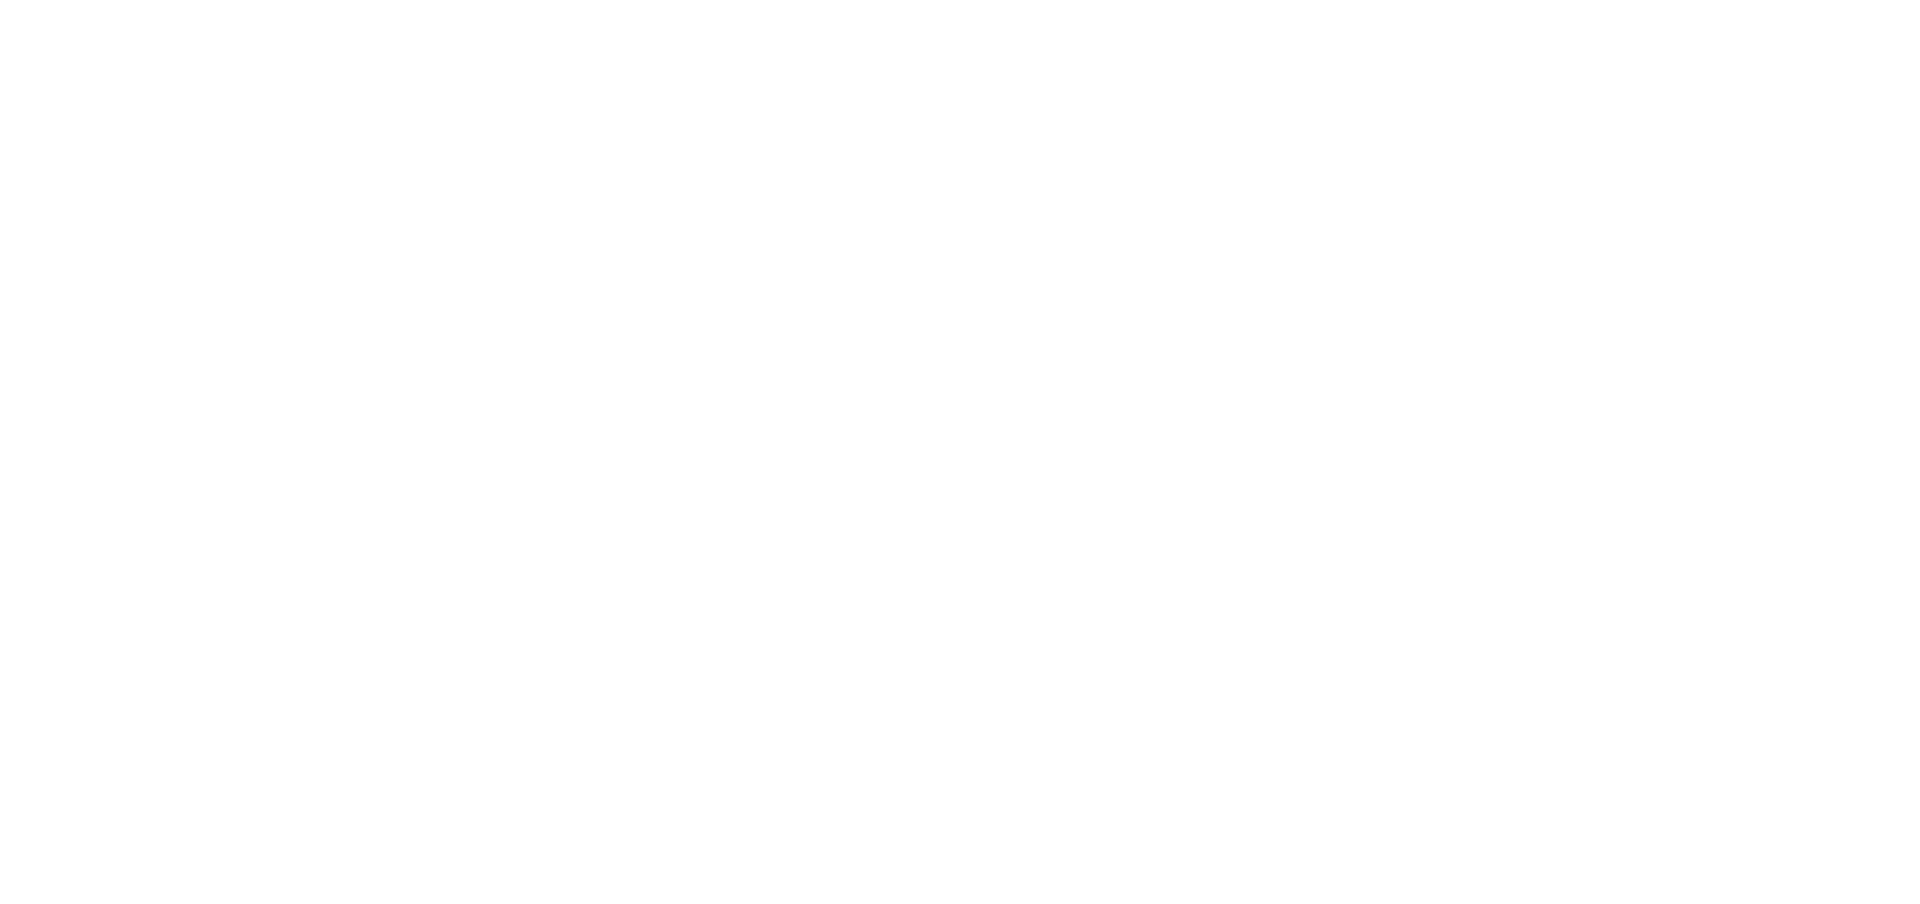 the whistling pig logo